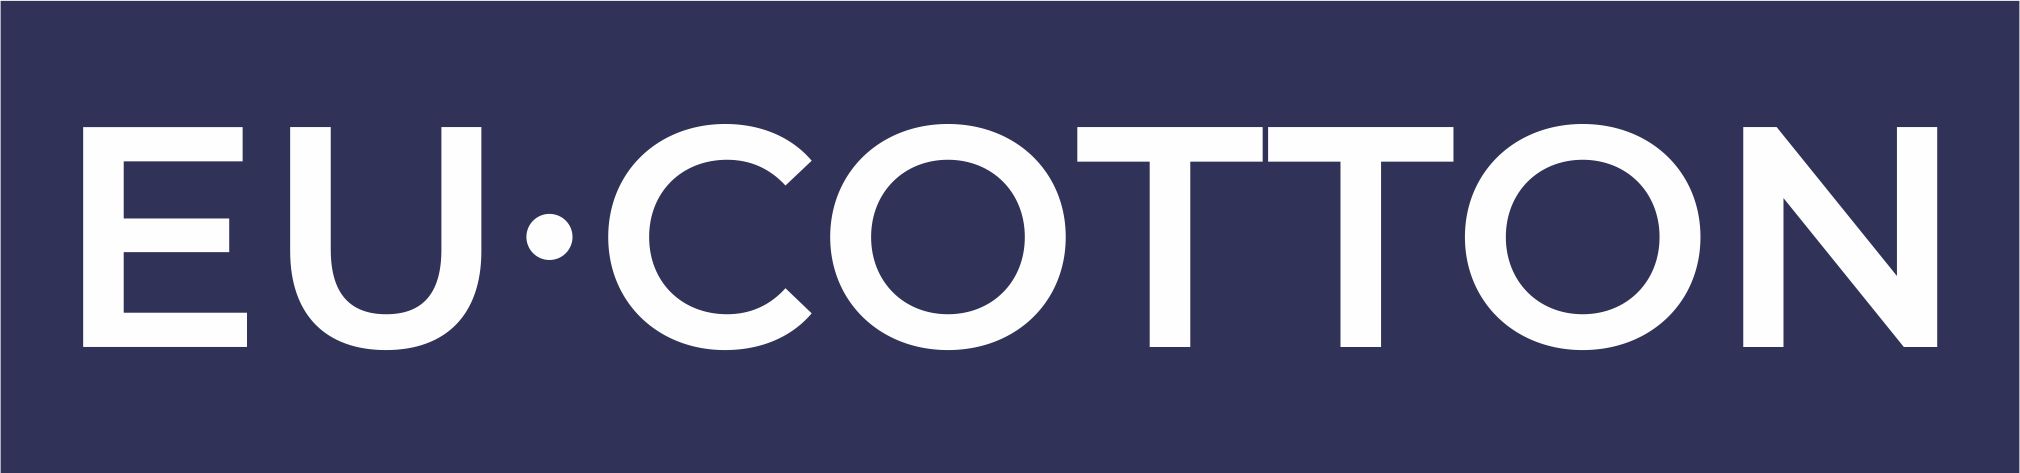 EU_COTTON_logo.jpg